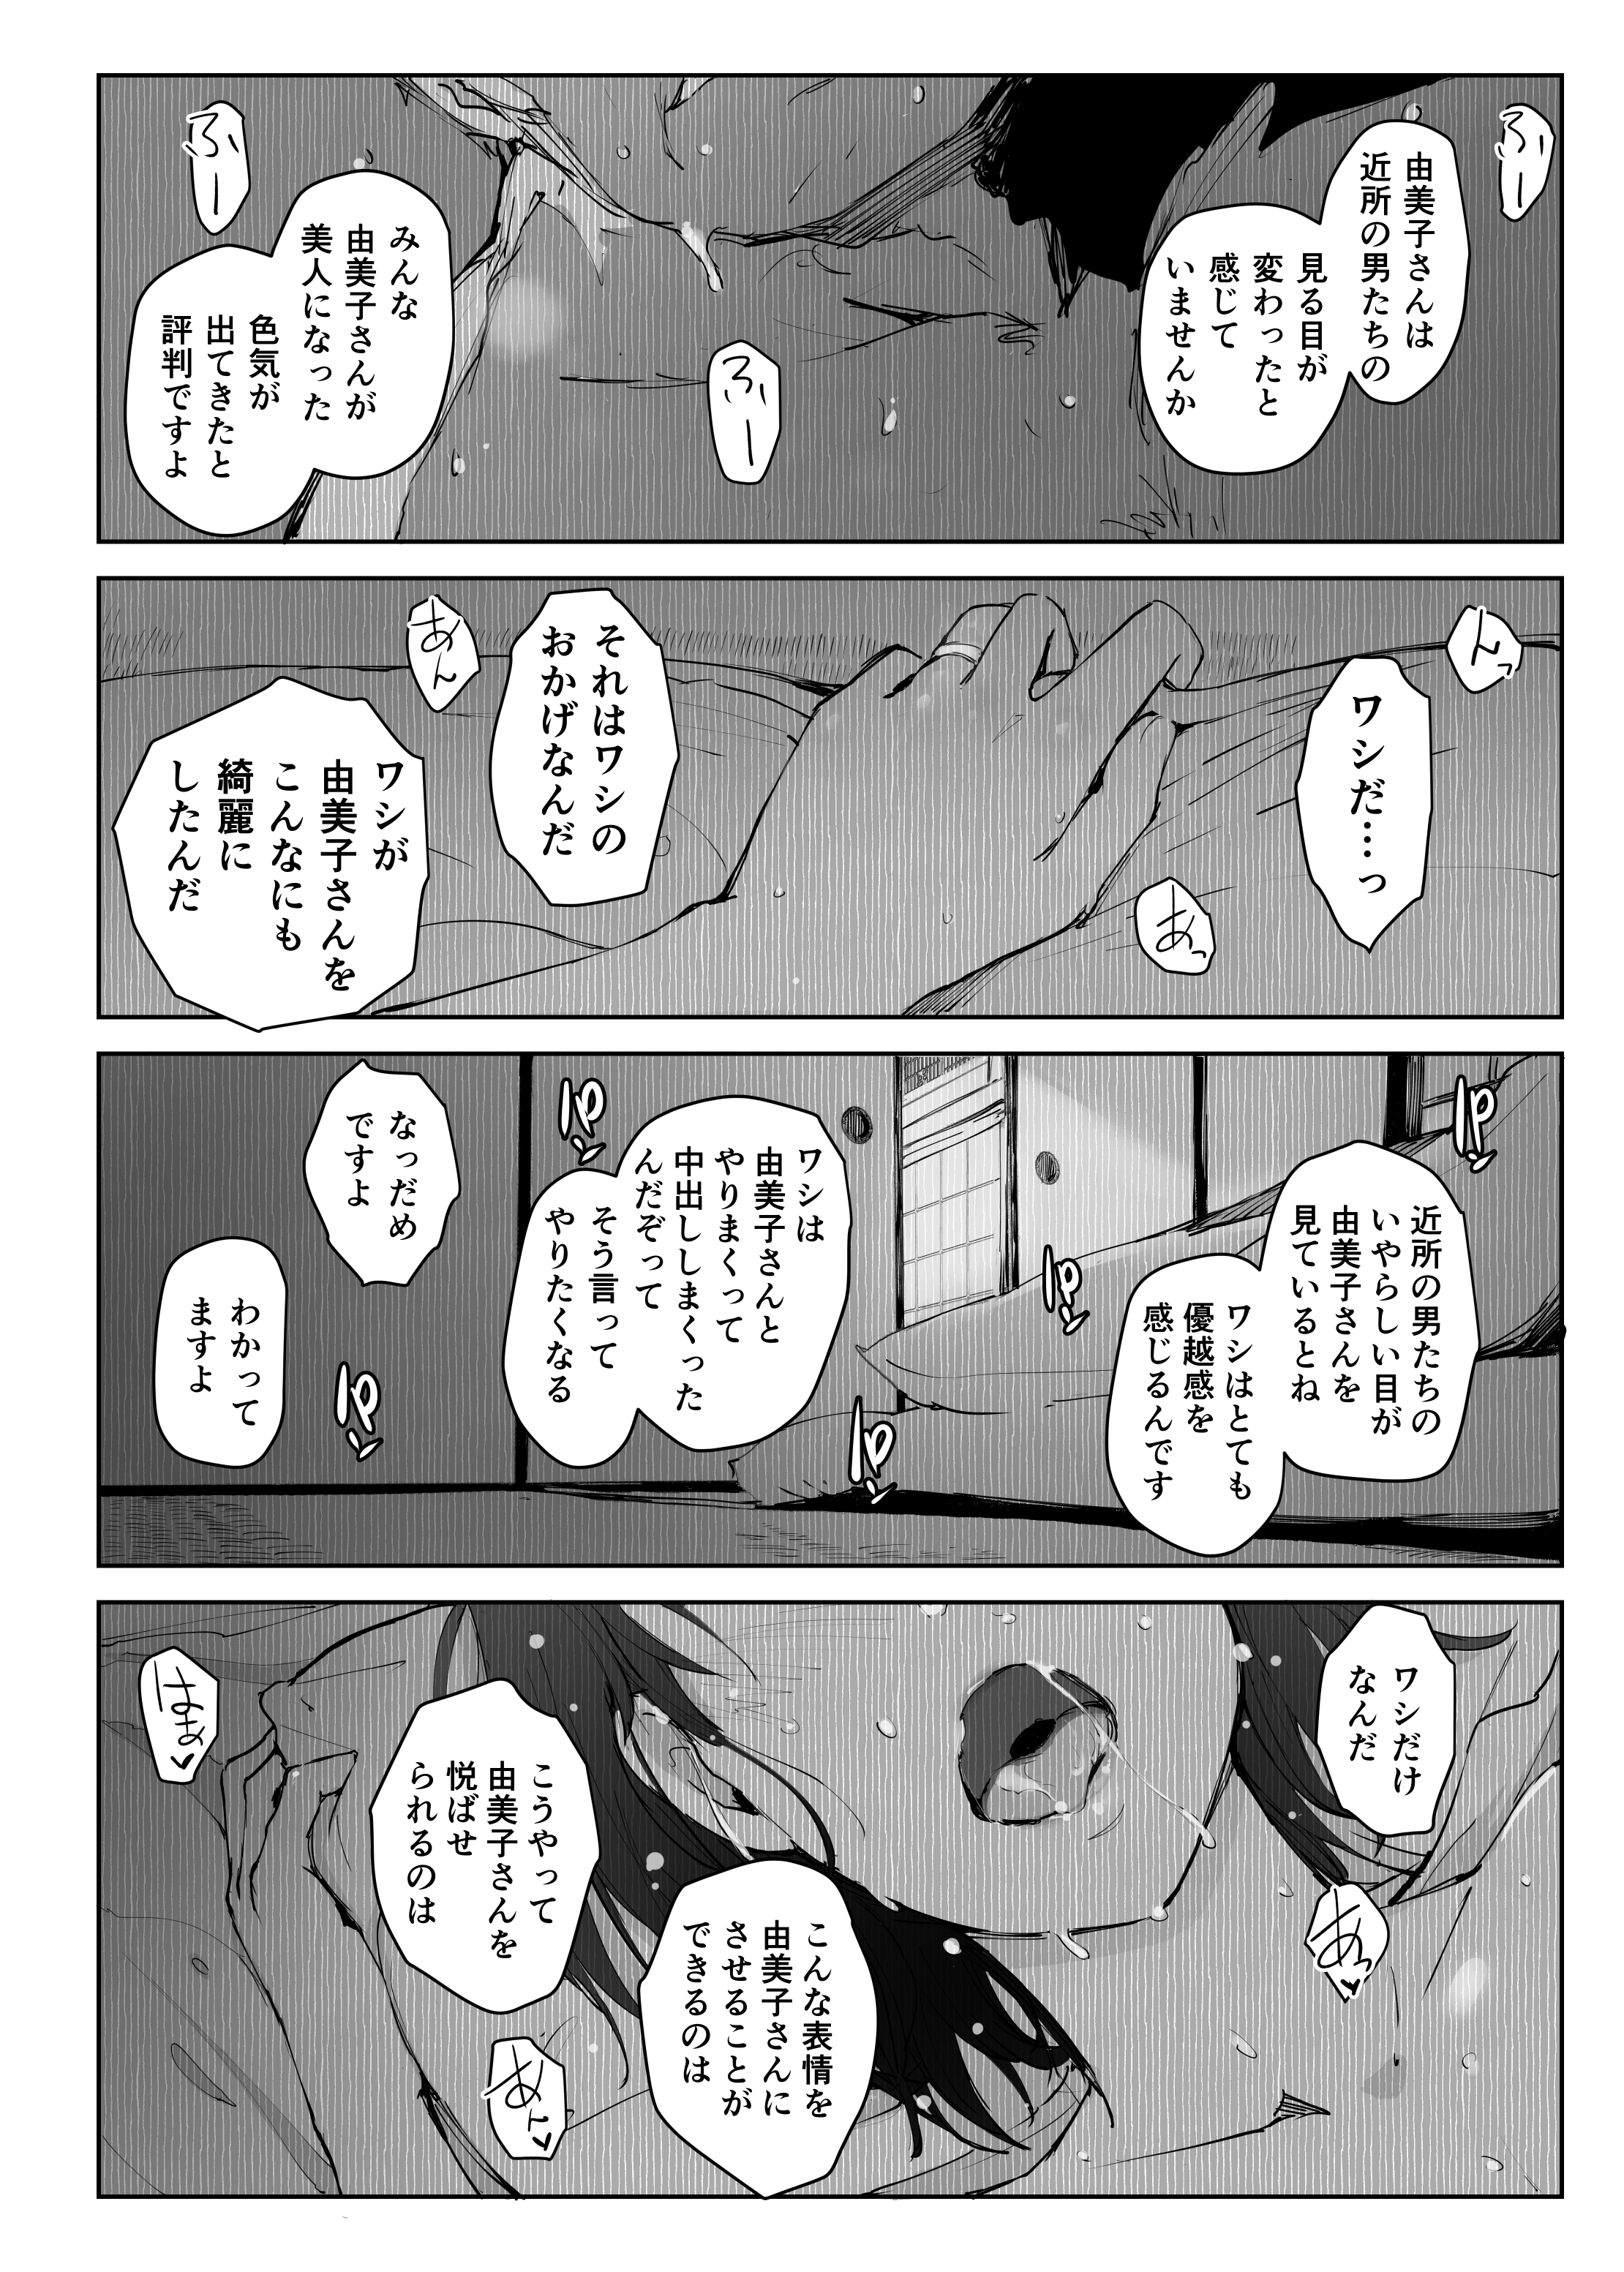 【オリジナル】人妻の由美子さんが旅行先でおじさんに寝取られて中出しをキメられてしまう…。の画像31枚目